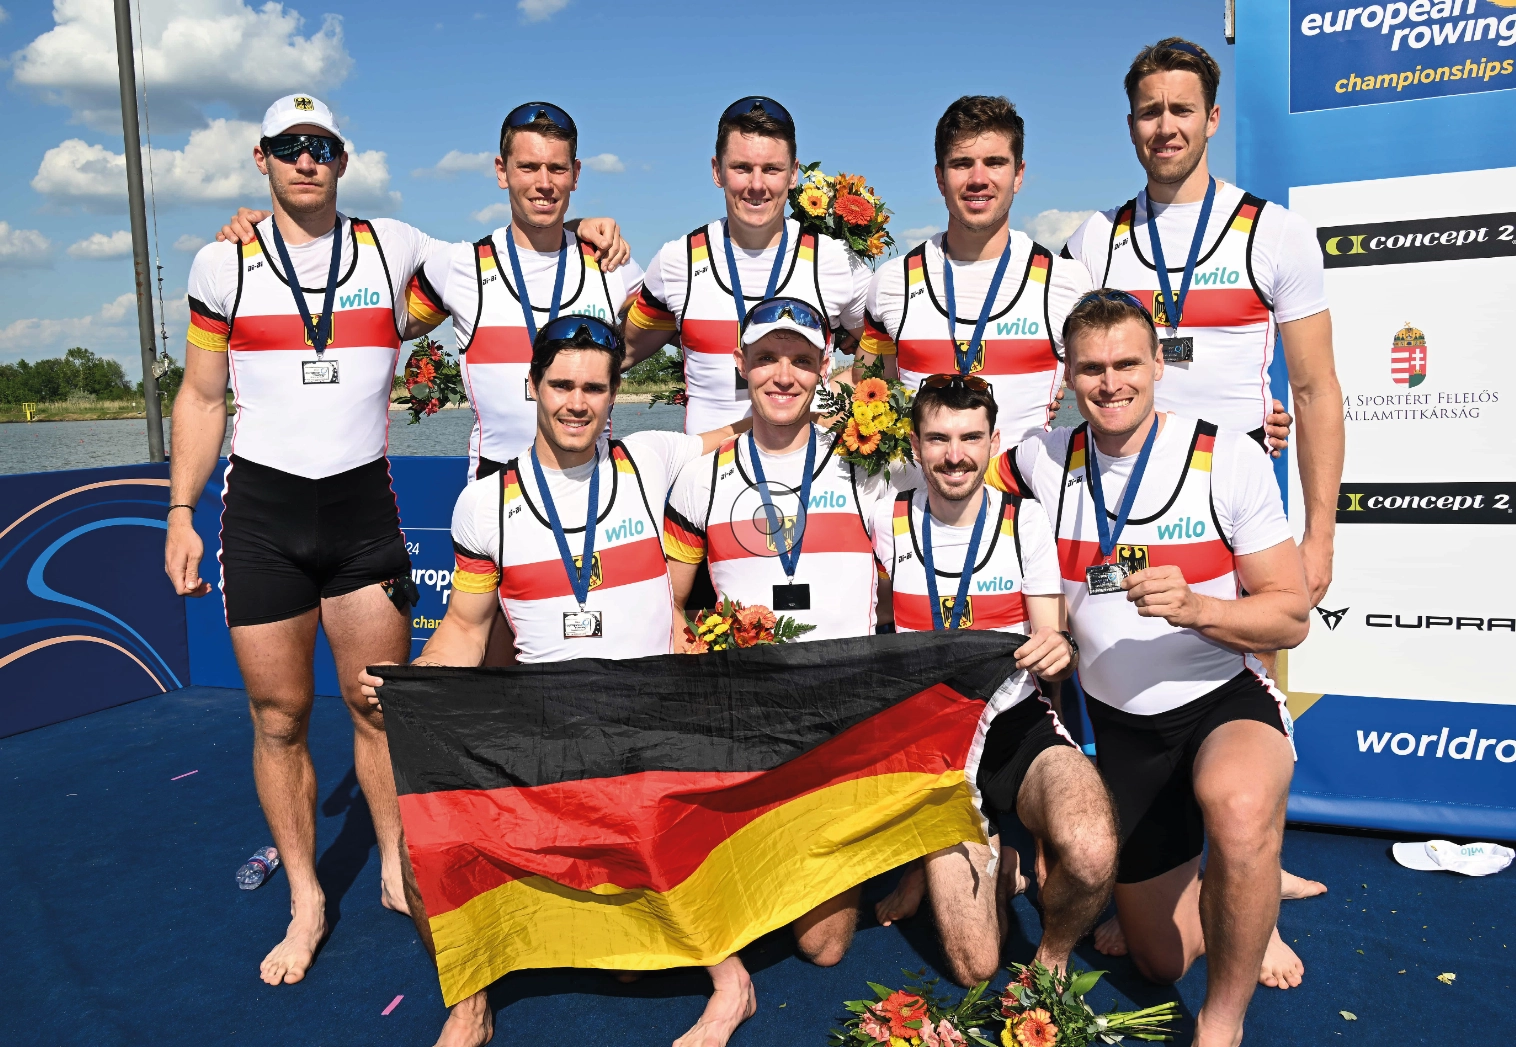 Neun Medaillenträger mit der Deutschlandflagge stehen und knien vor einem Boot.